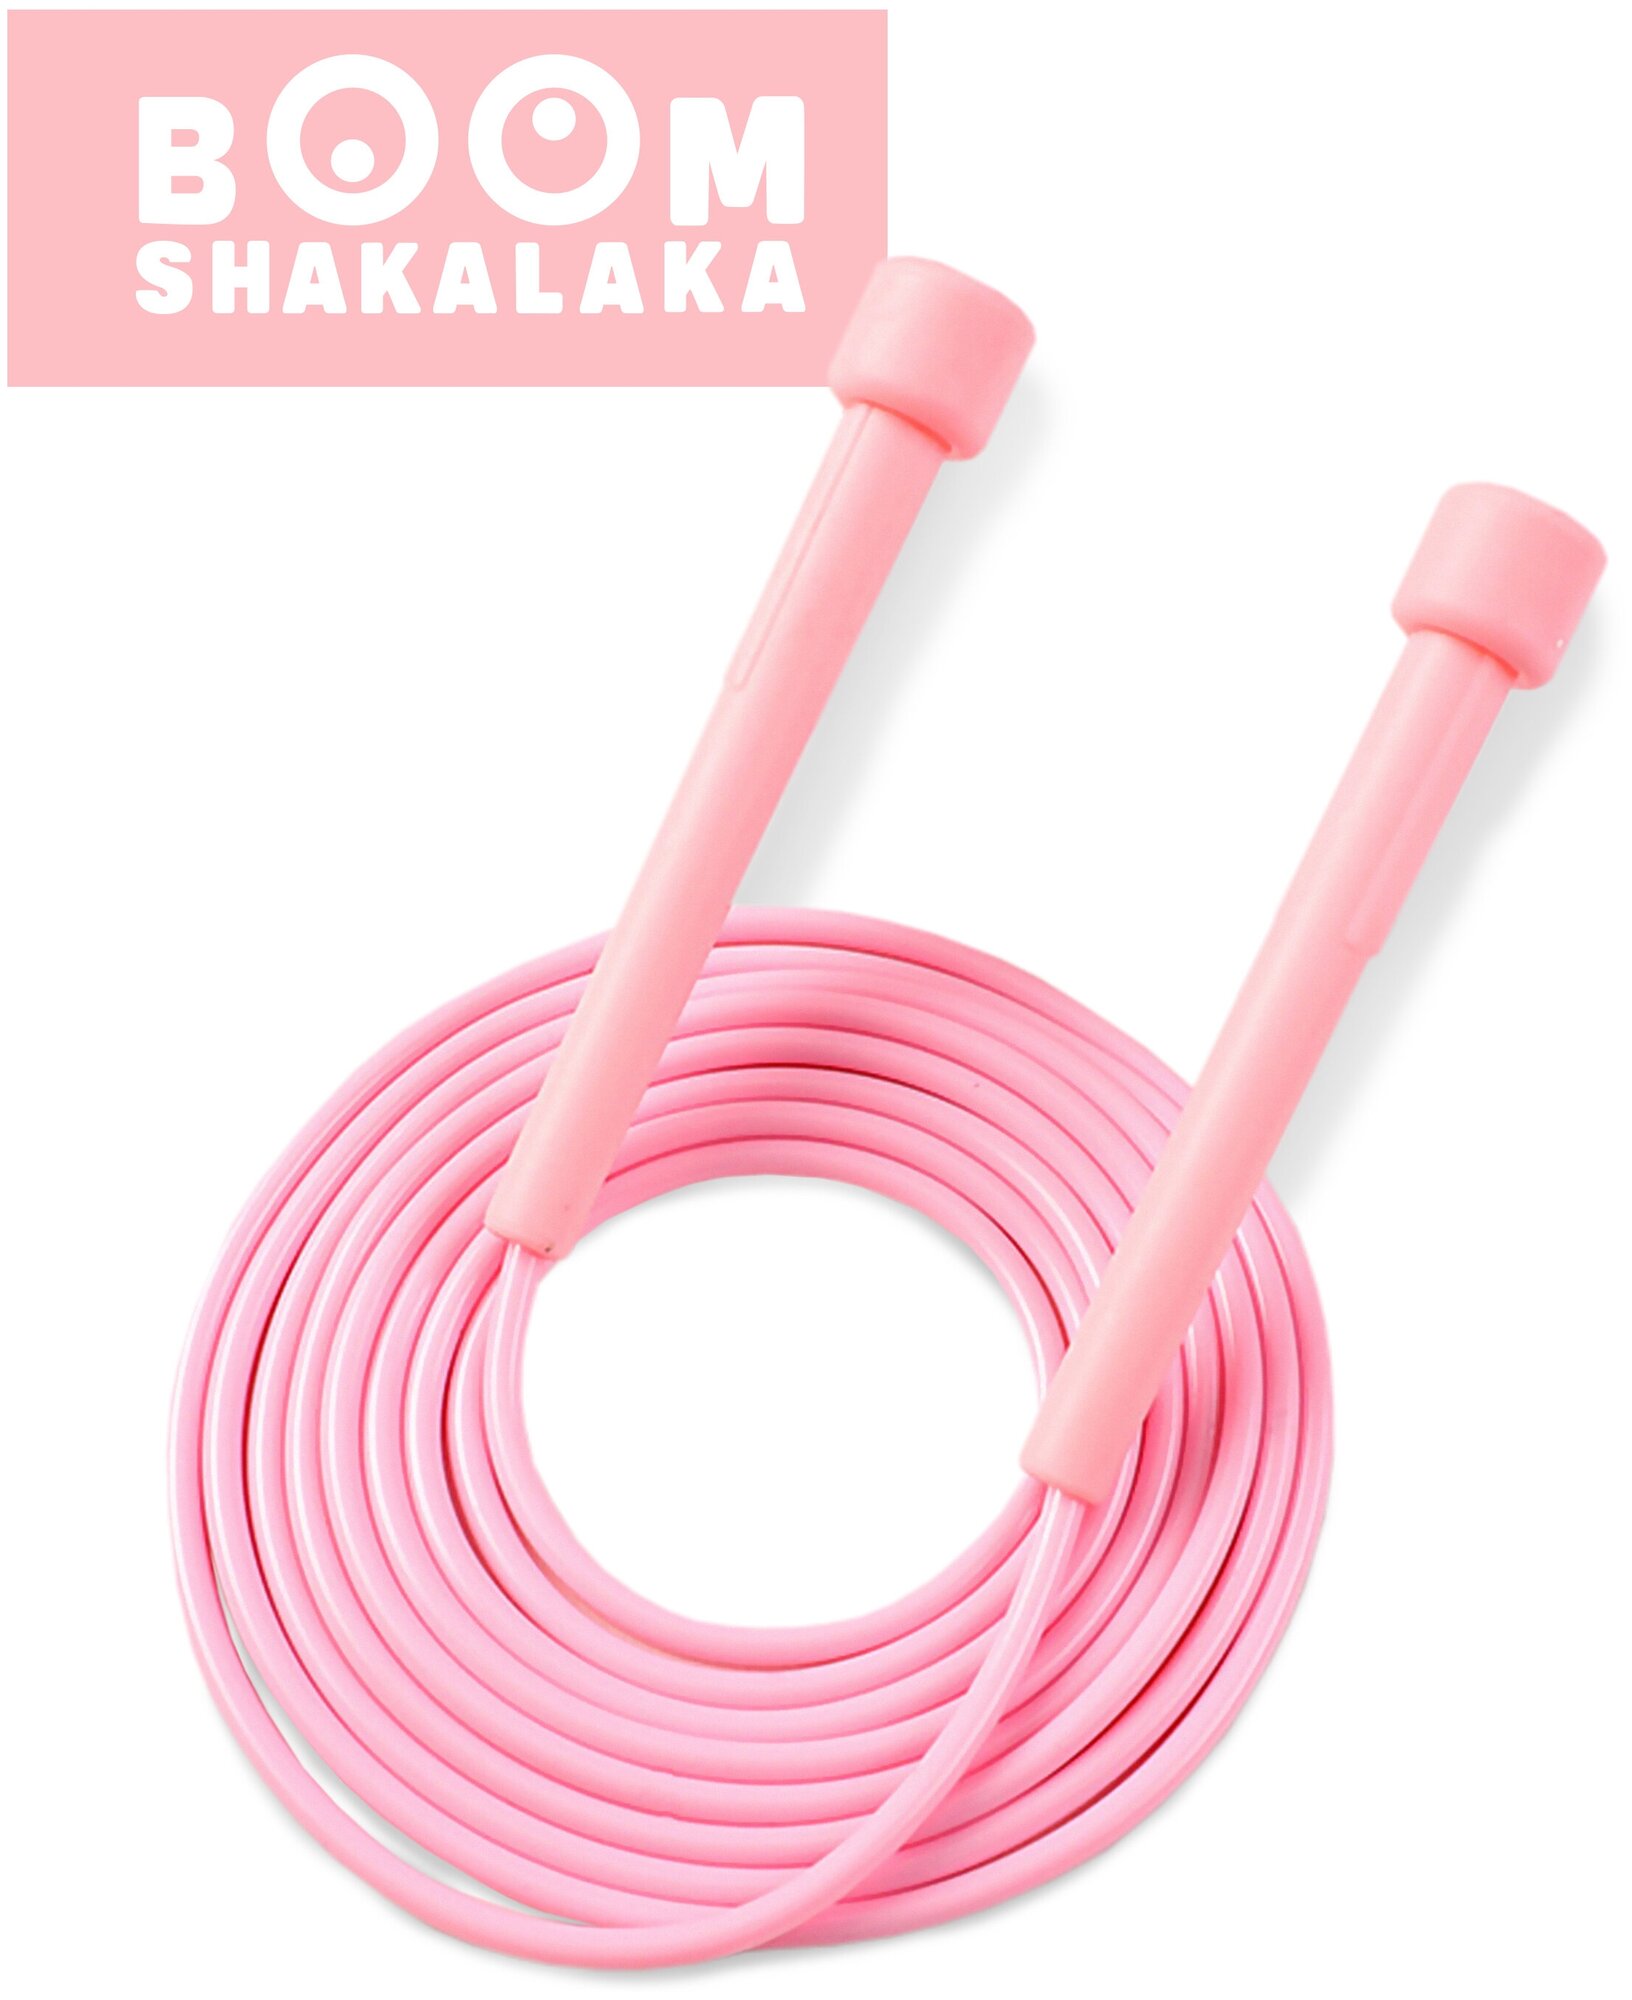 Скакалка скоростная Boomshakalaka, шнур 2.8м, розовая, с регулировкой, прыгалка для взрослых и детей, для кроссфита, фитнеса, бокса, гимнастики